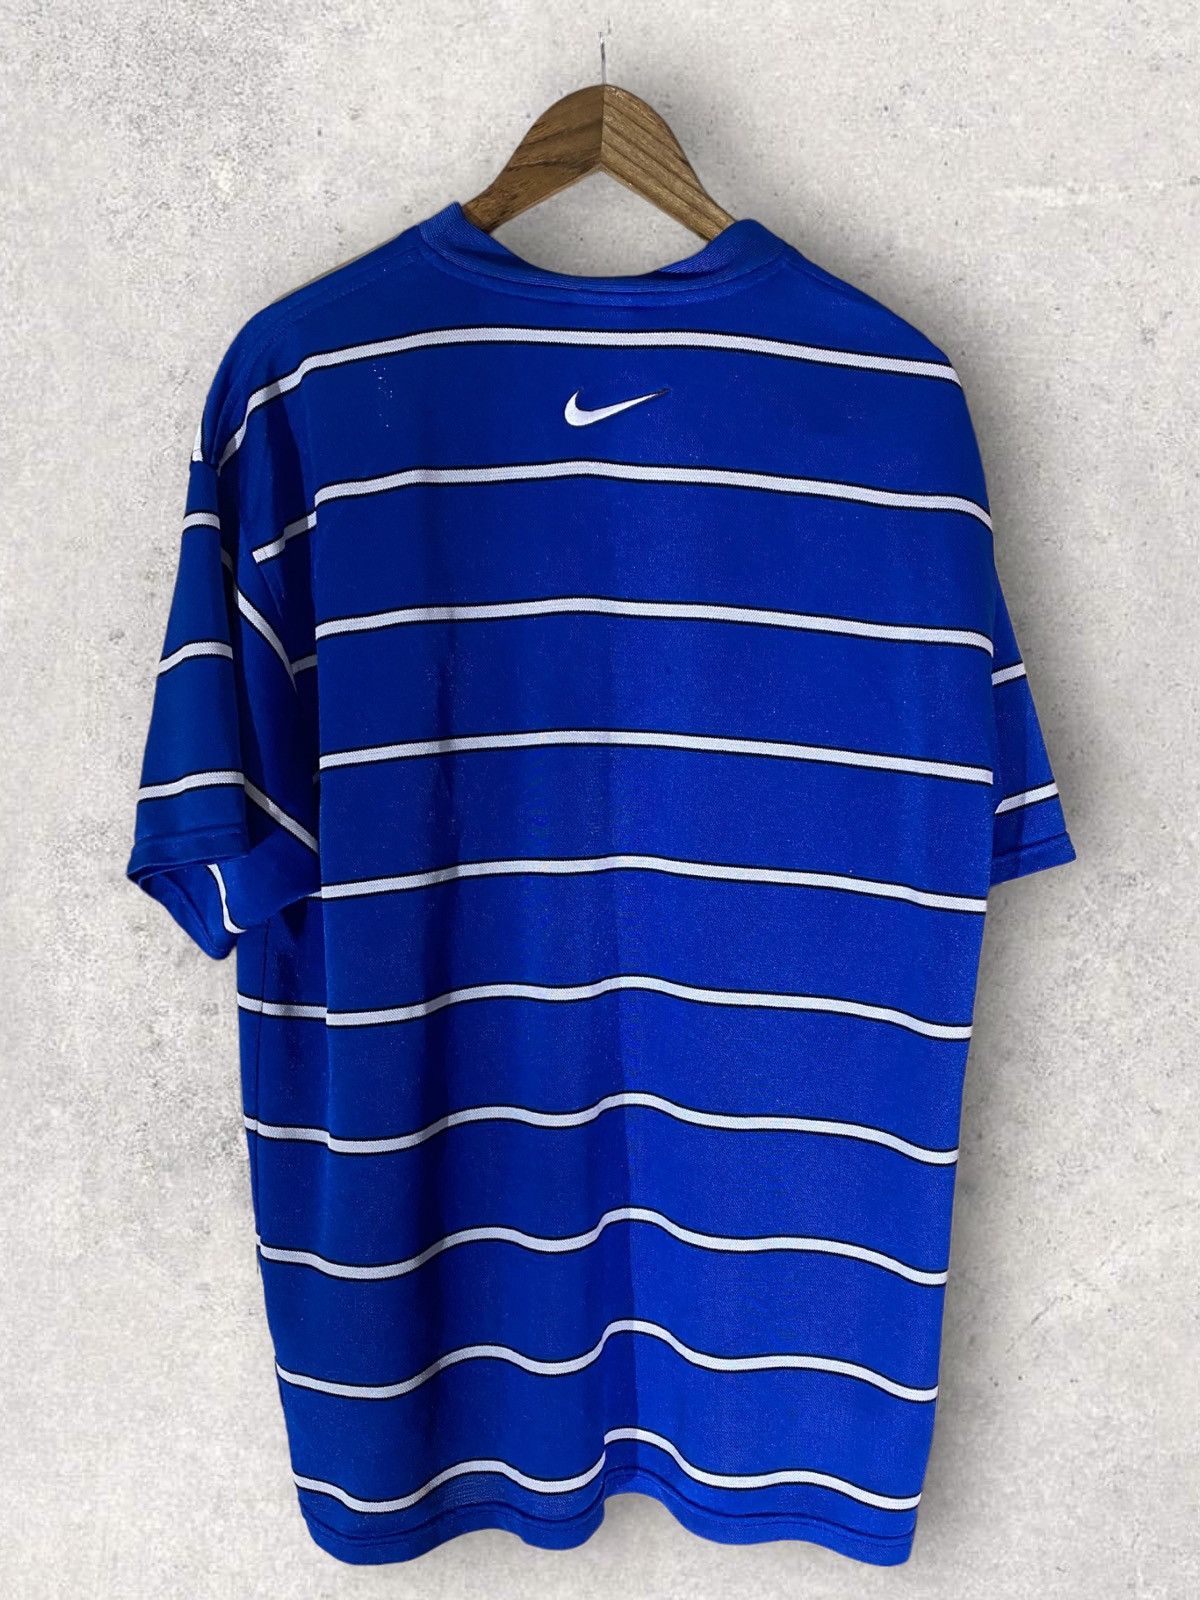 Nike Vintage Nike Striped Center Swoosh T-Shirt Size US XL / EU 56 / 4 - 2 Preview